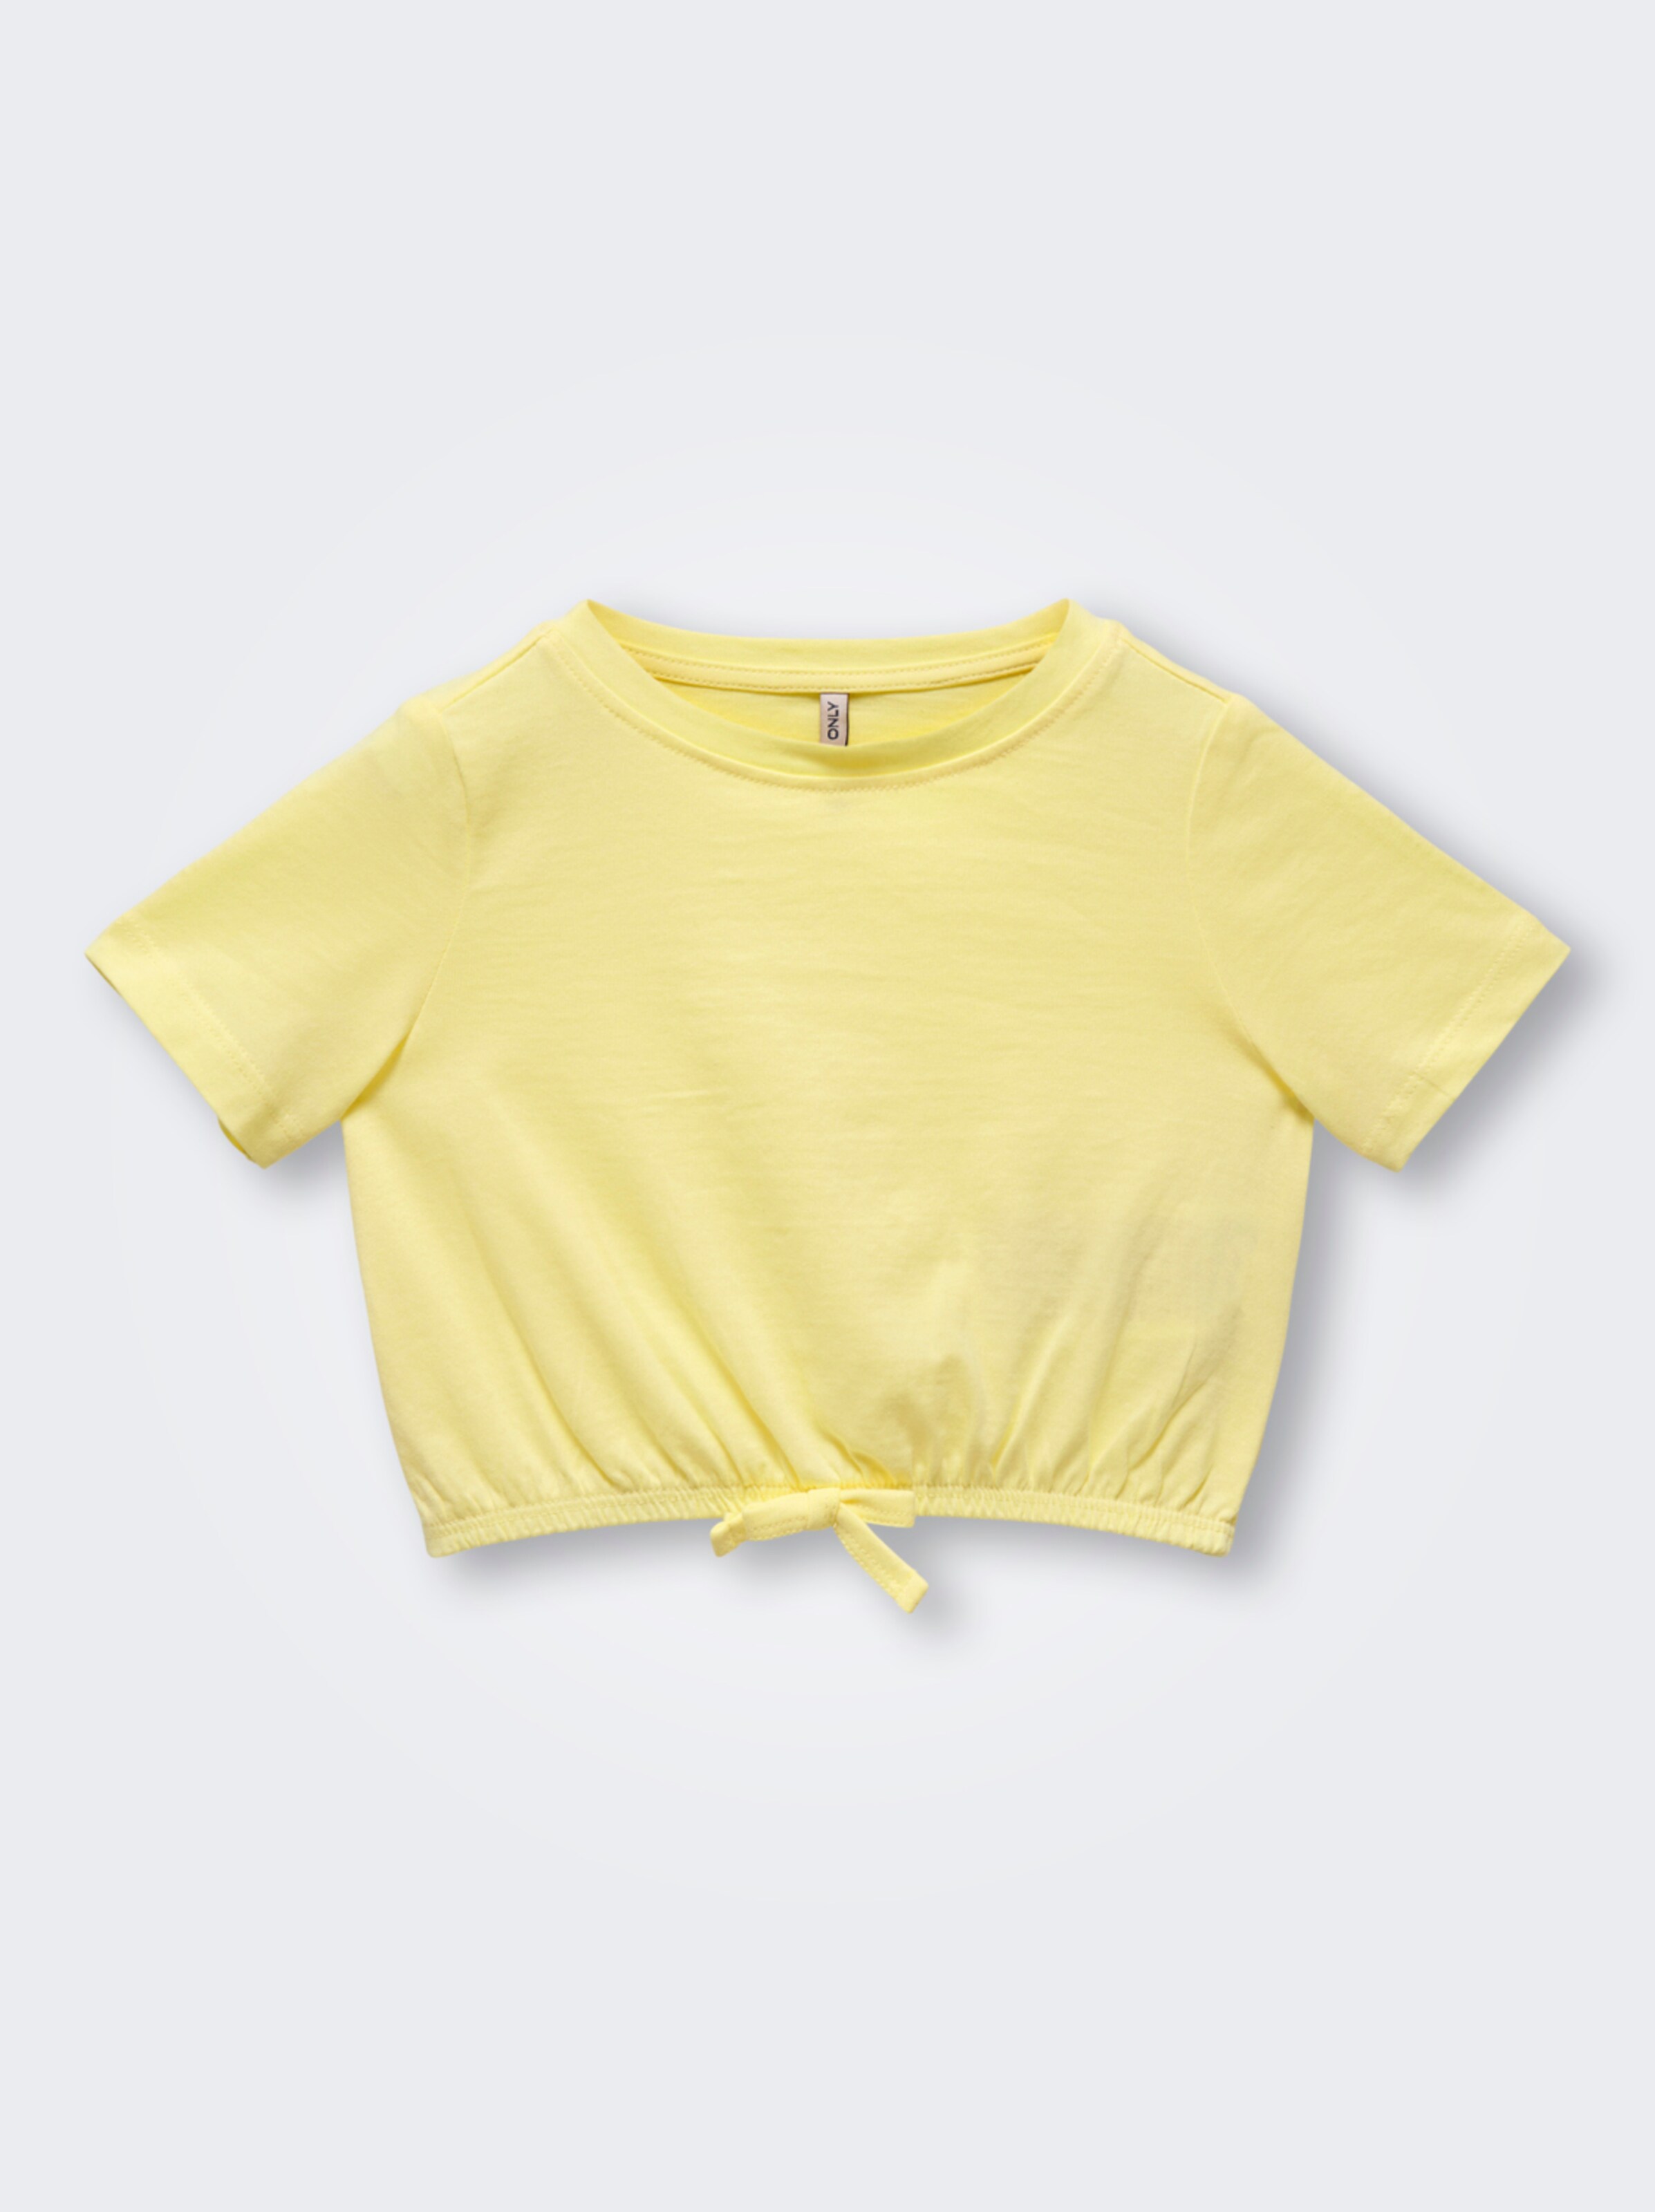 Kids Mini Girl T-Shirt 'may' 116 Jaune